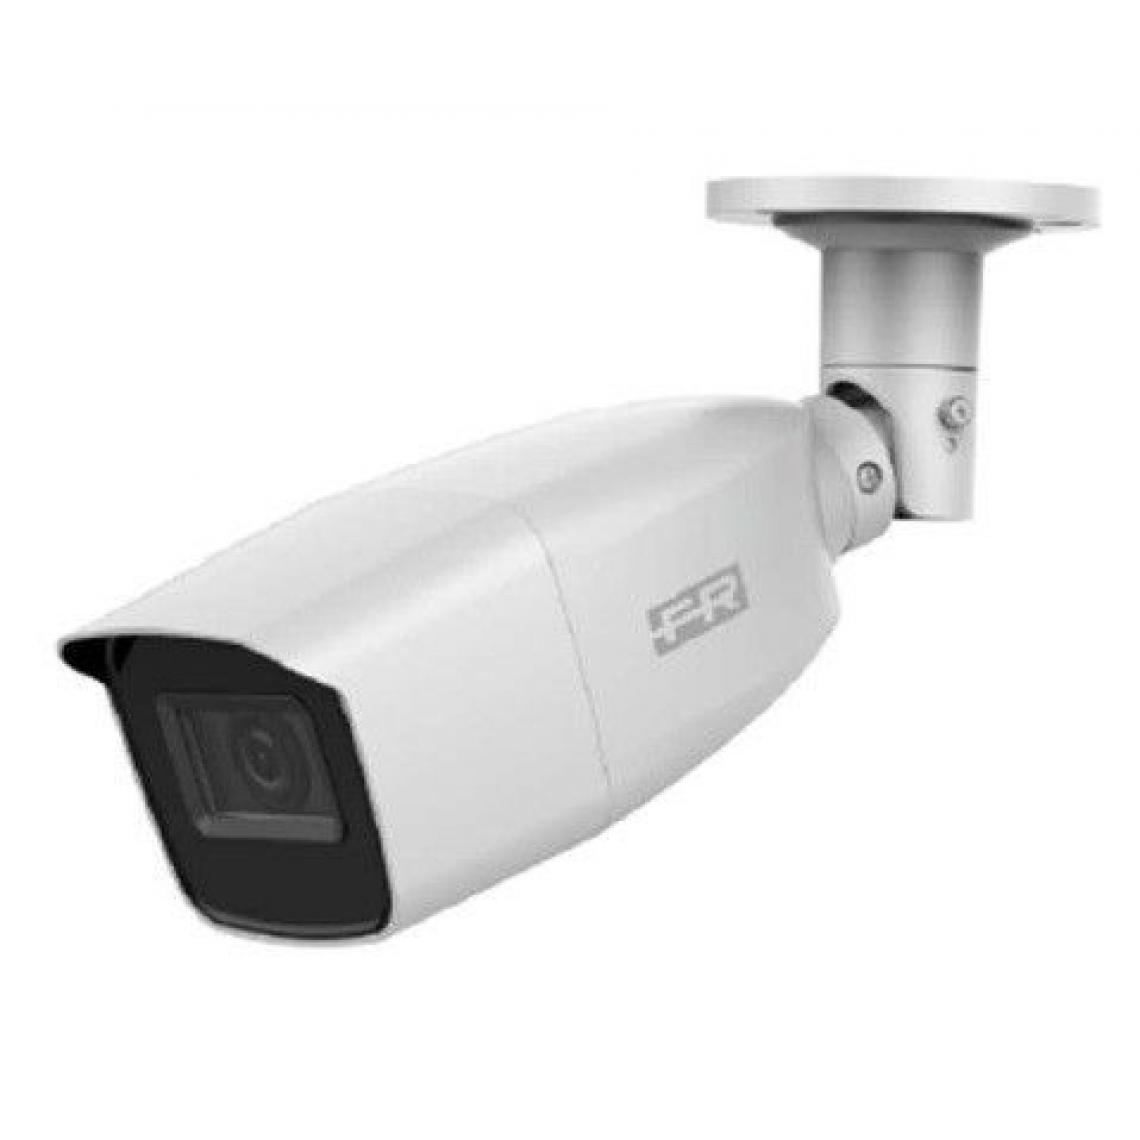 Fracarro - Caméra surveillance FRACARRO CIR-A 2812-4 MP - Caméra de surveillance connectée